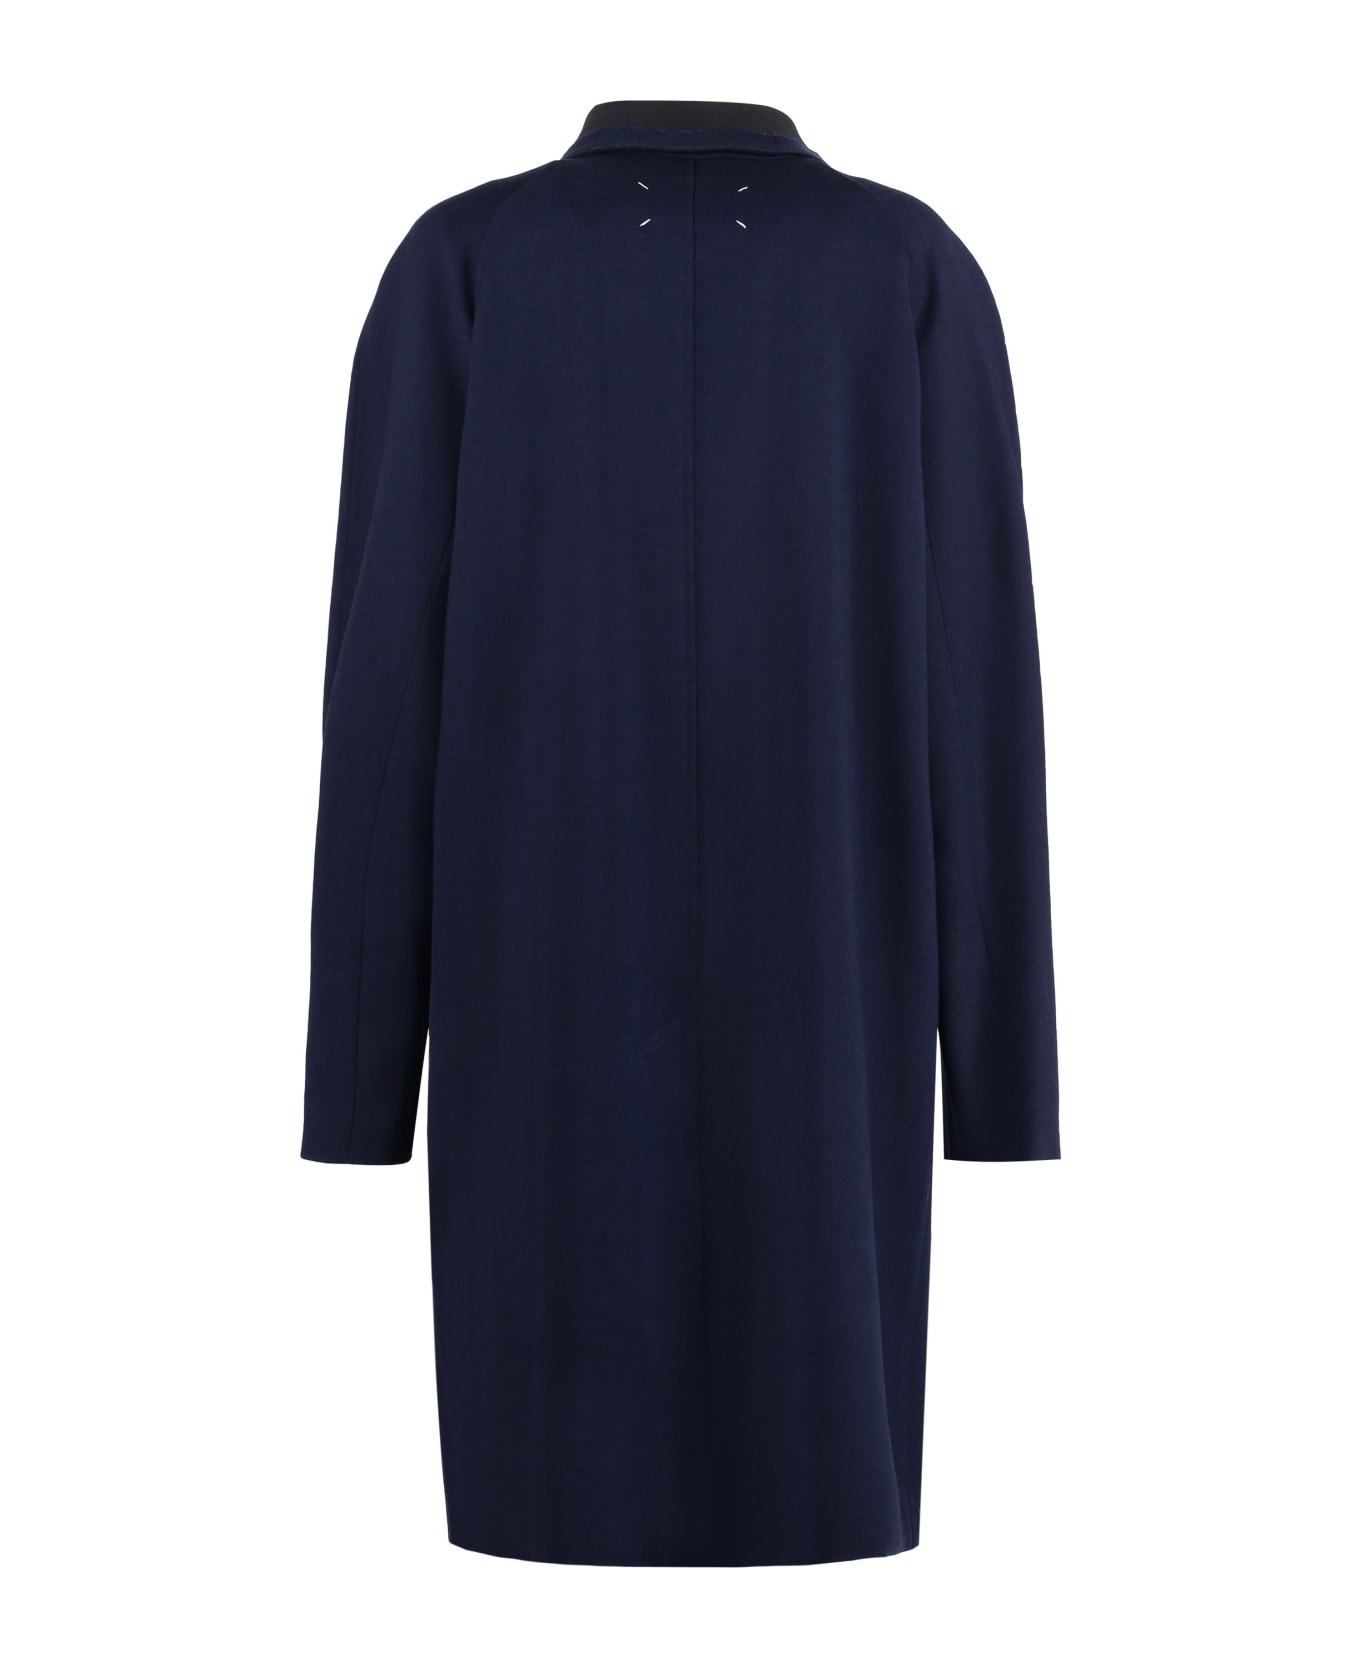 Maison Margiela Single-breasted Wool Coat - Navy Blue コート